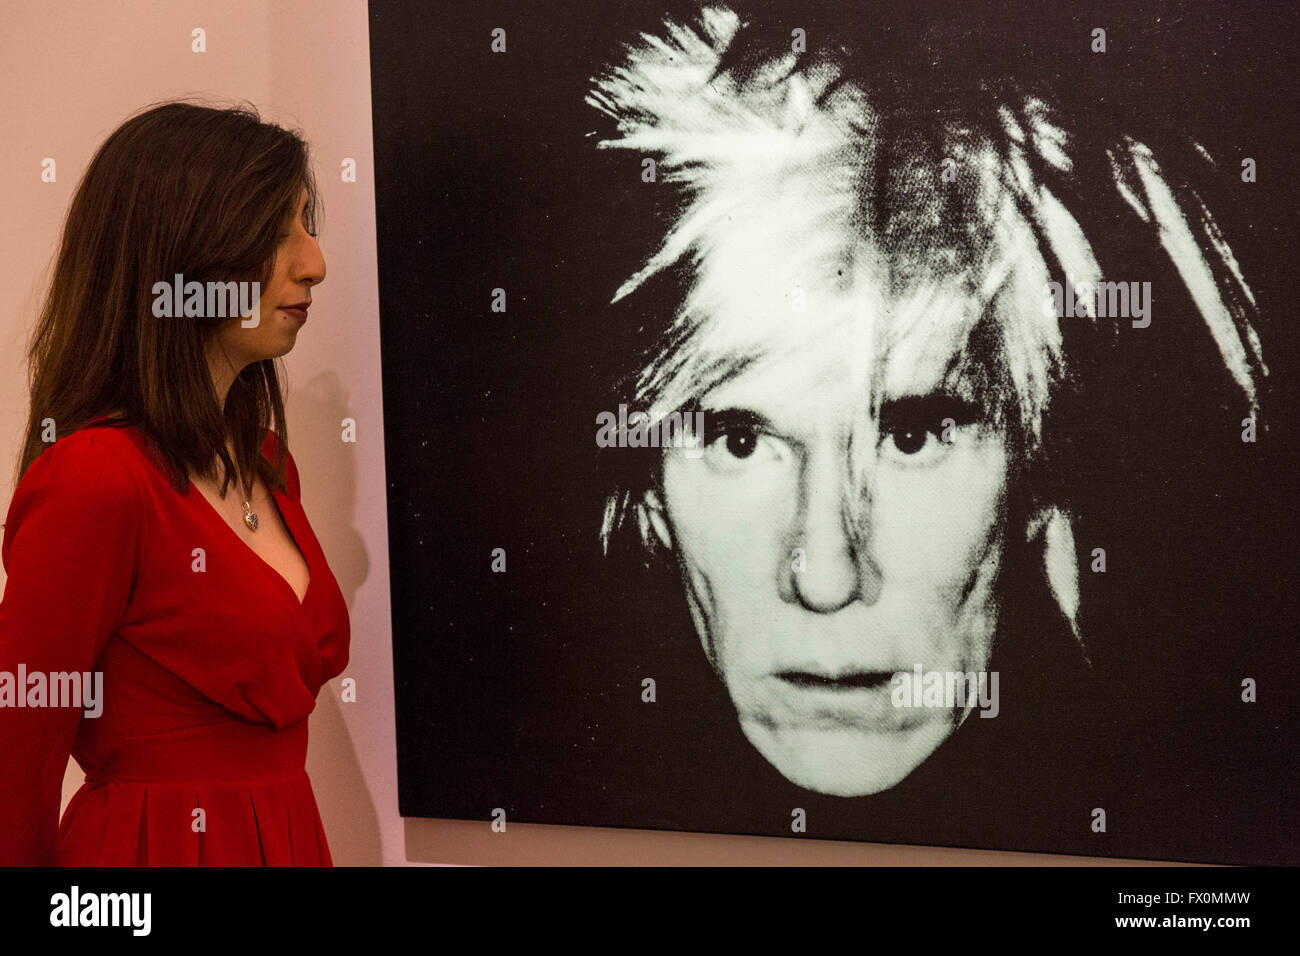 Londres, Royaume-Uni. 8 avril 2016. (Autoportrait), 1986 perruque de peur,  d'Andy Warhol, estimation : 7 à 10 millions de USD. Vente aux enchères chez  Sotheby's Londres Aperçu de l'art de l'Art Contemporain